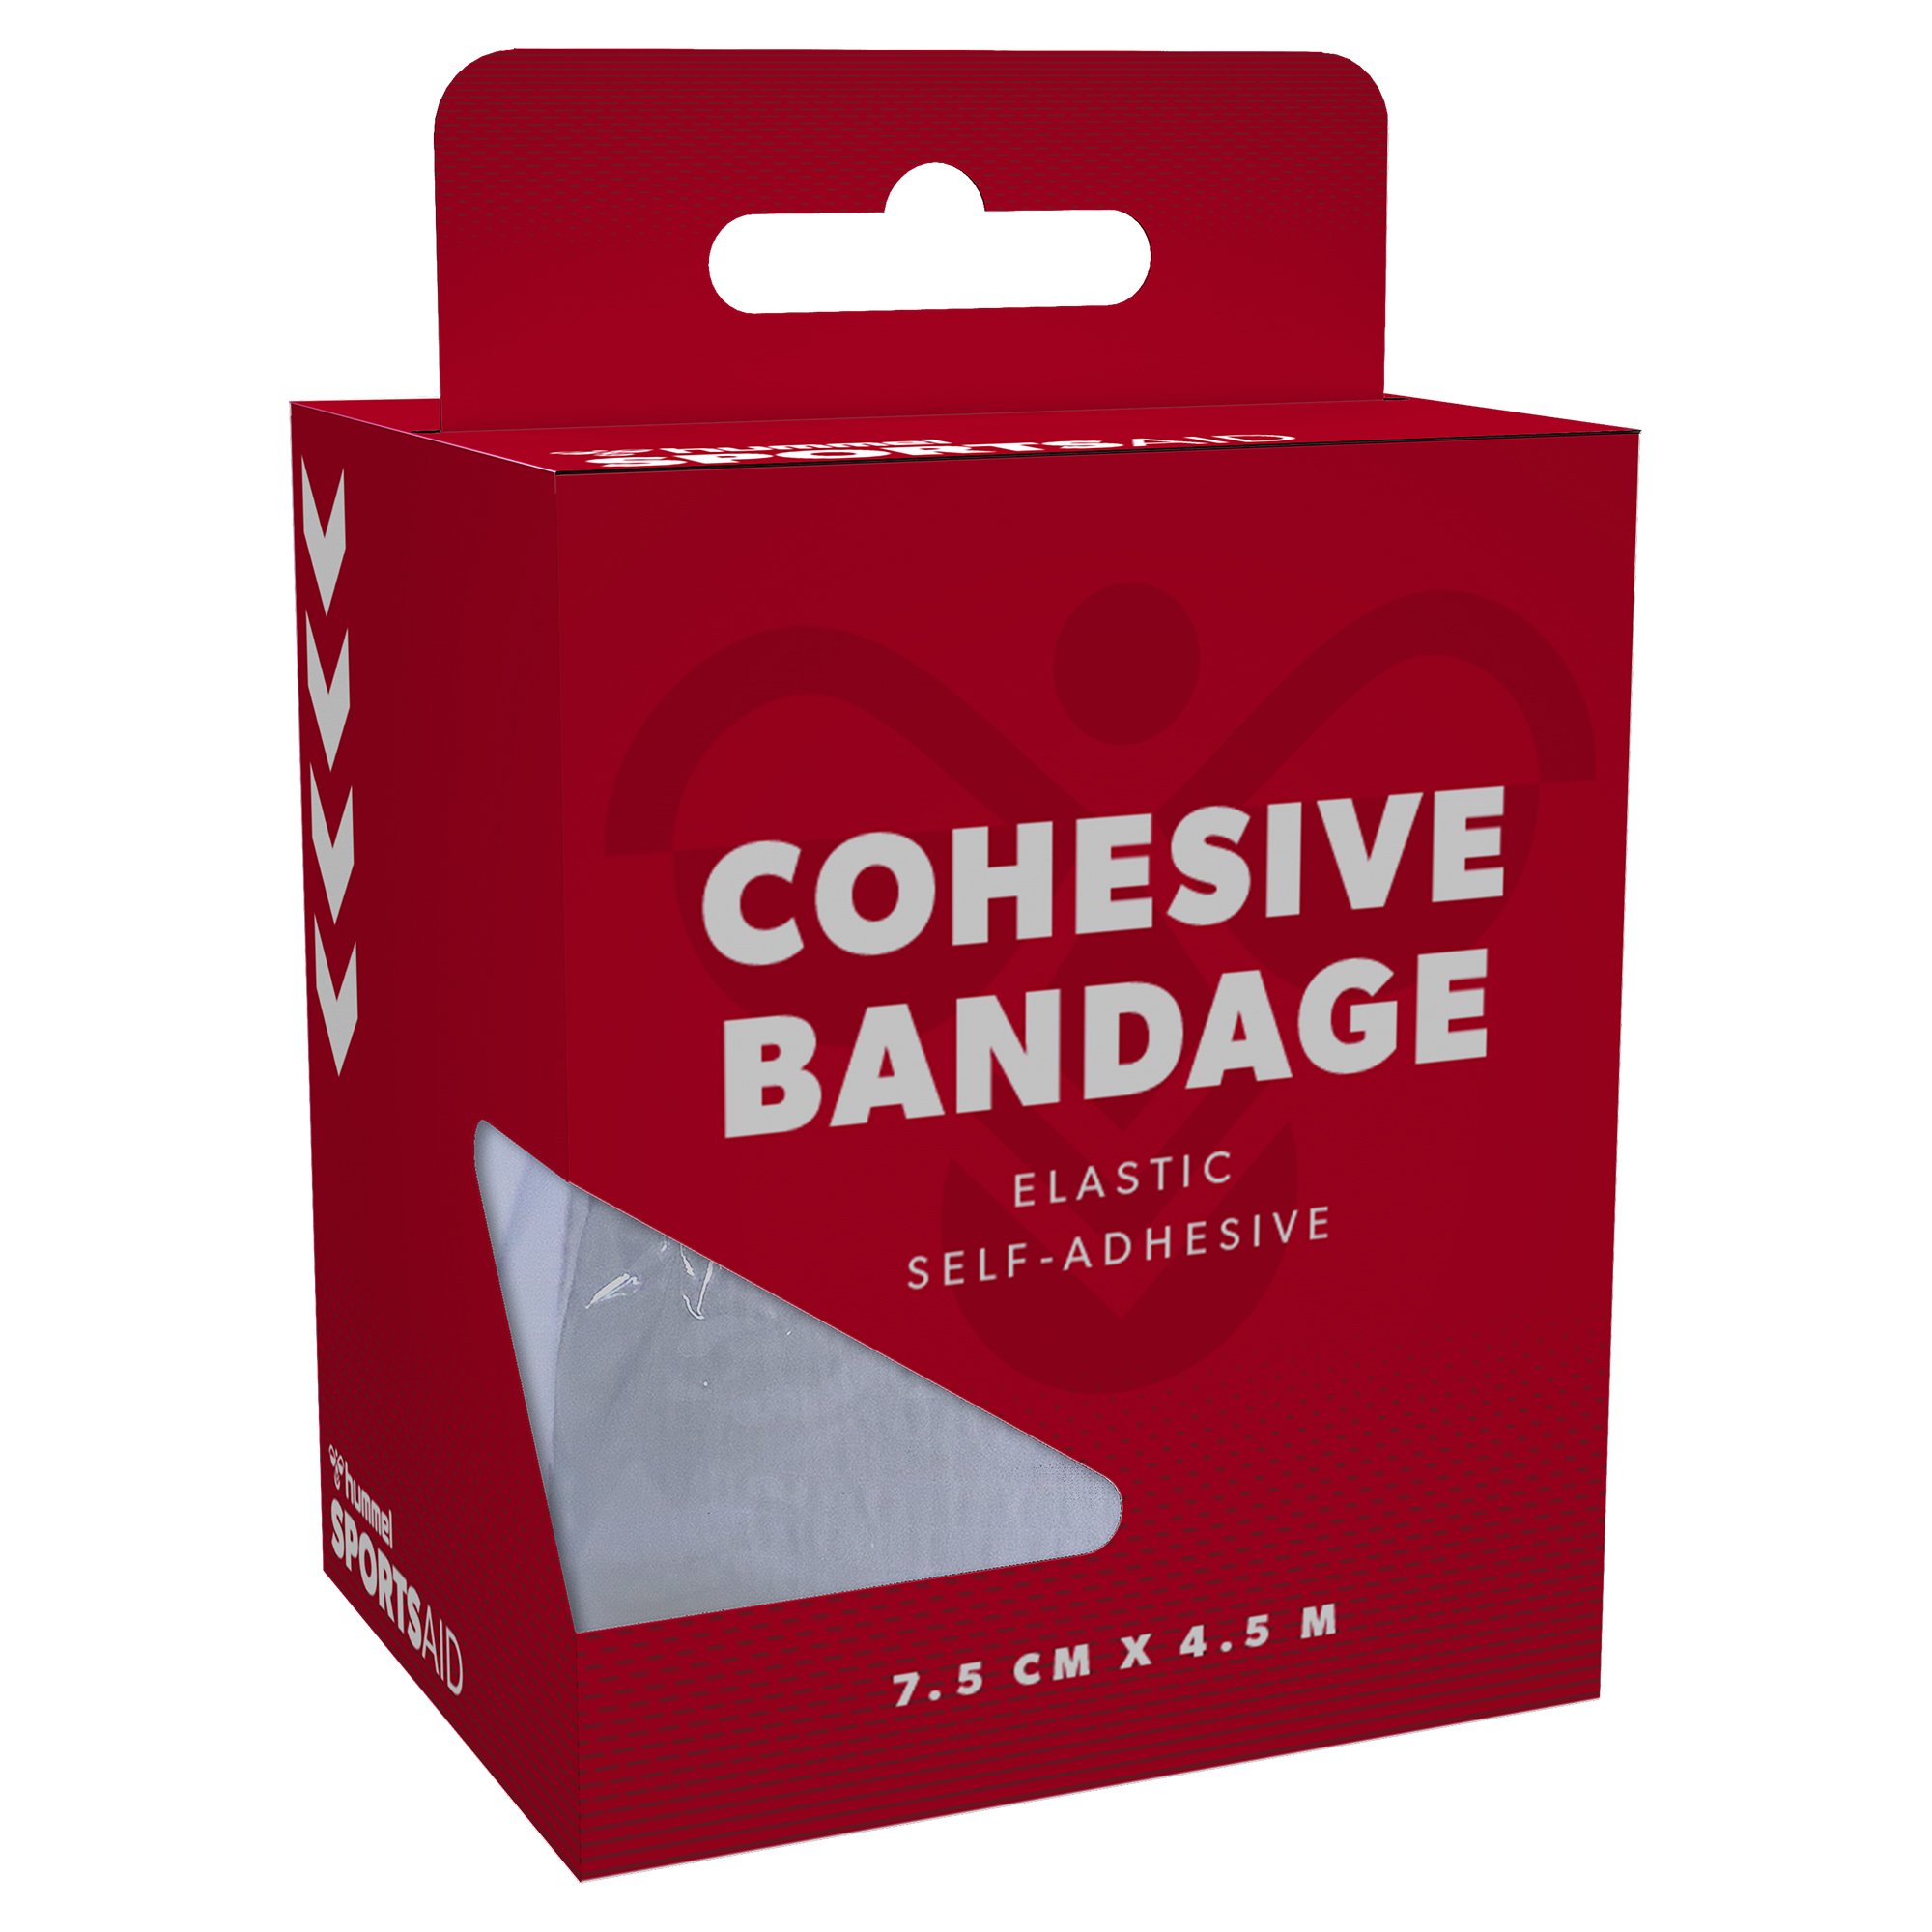 Sportsaid Cohesive Bandage